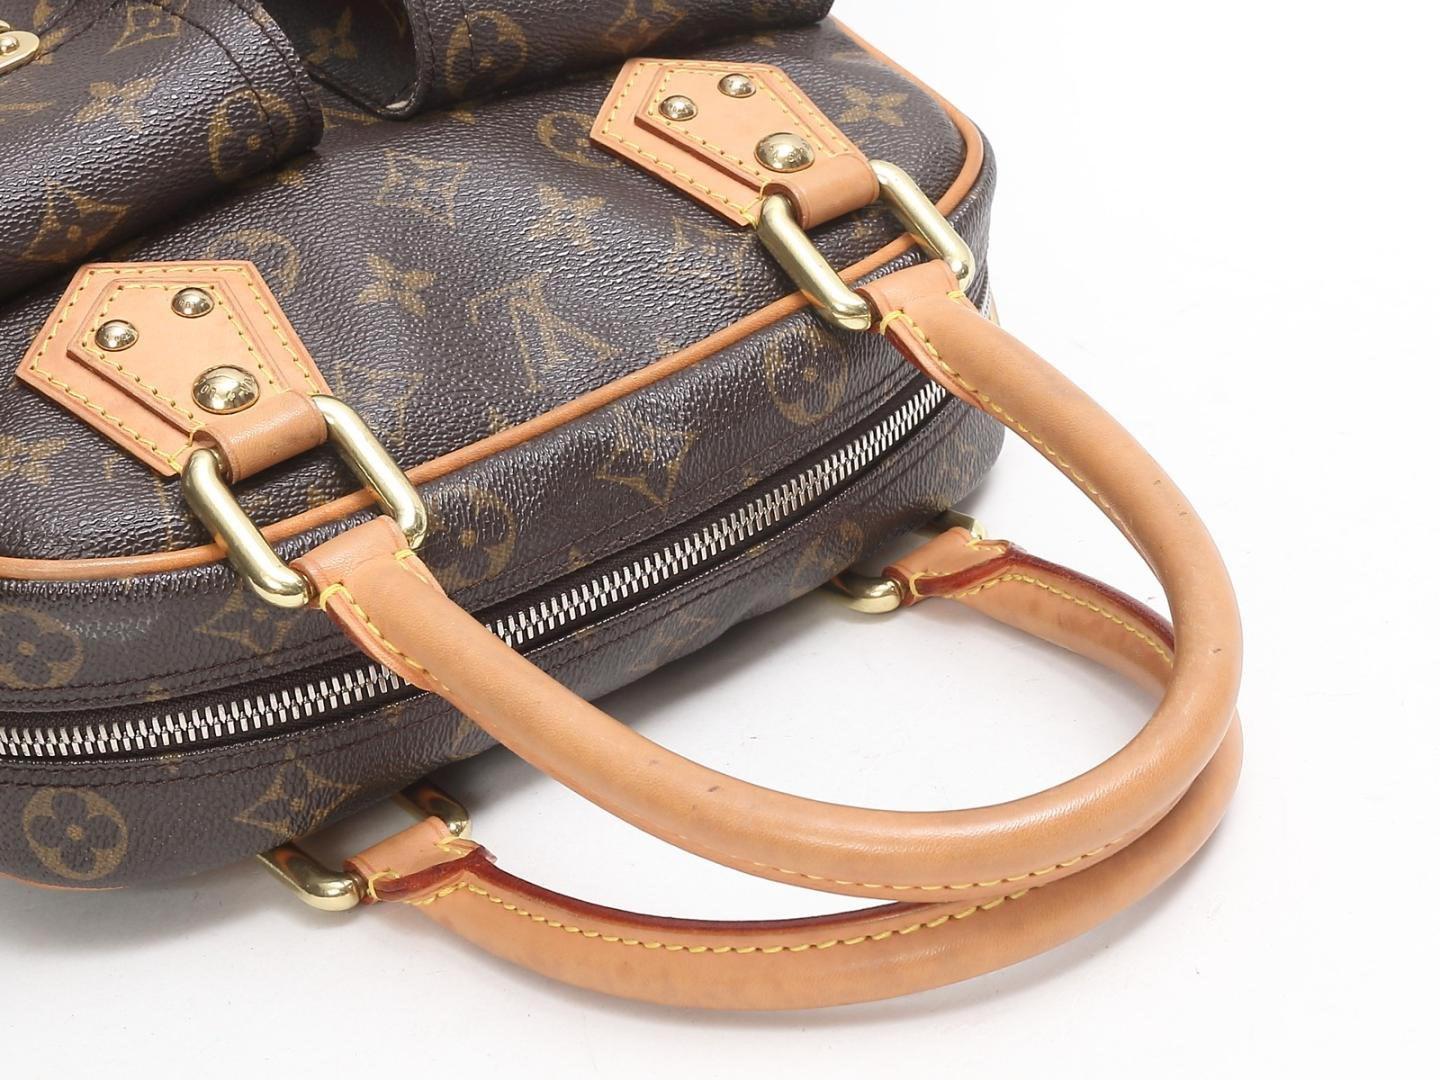 Louis Vuitton Noé Handbag 370296